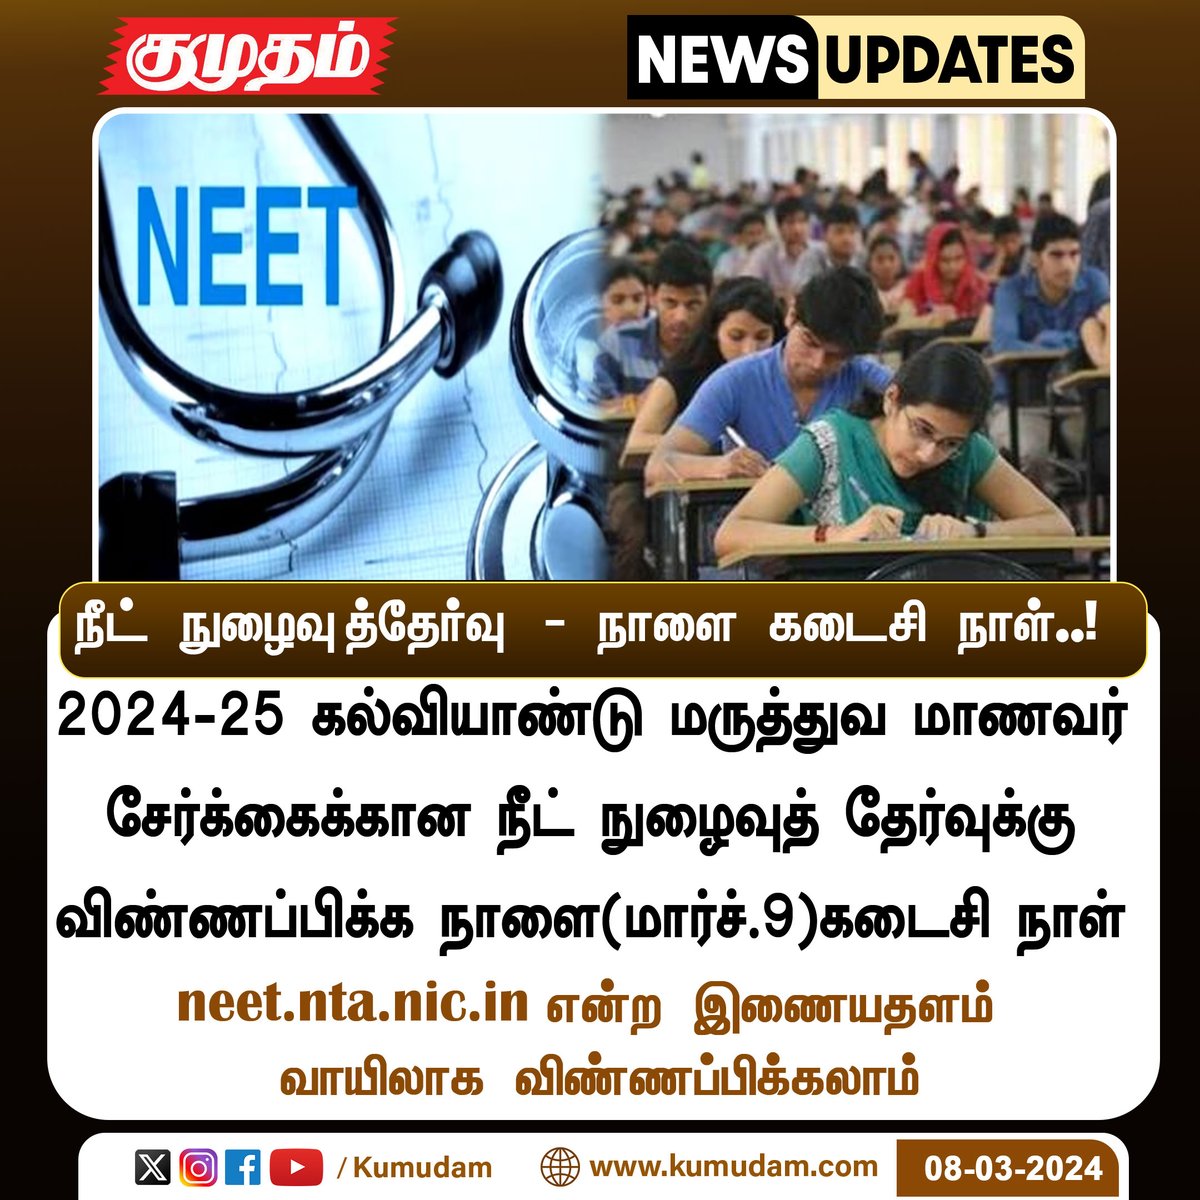 நீட் நுழைவுத்தேர்வு - நாளை கடைசி நாள்..! 

#neet2024 | #NEETUG2024 |  #doctors | #centralgovt | #medicalstudents  | #India | #application | #lastdate | #exam | #onlineapplication